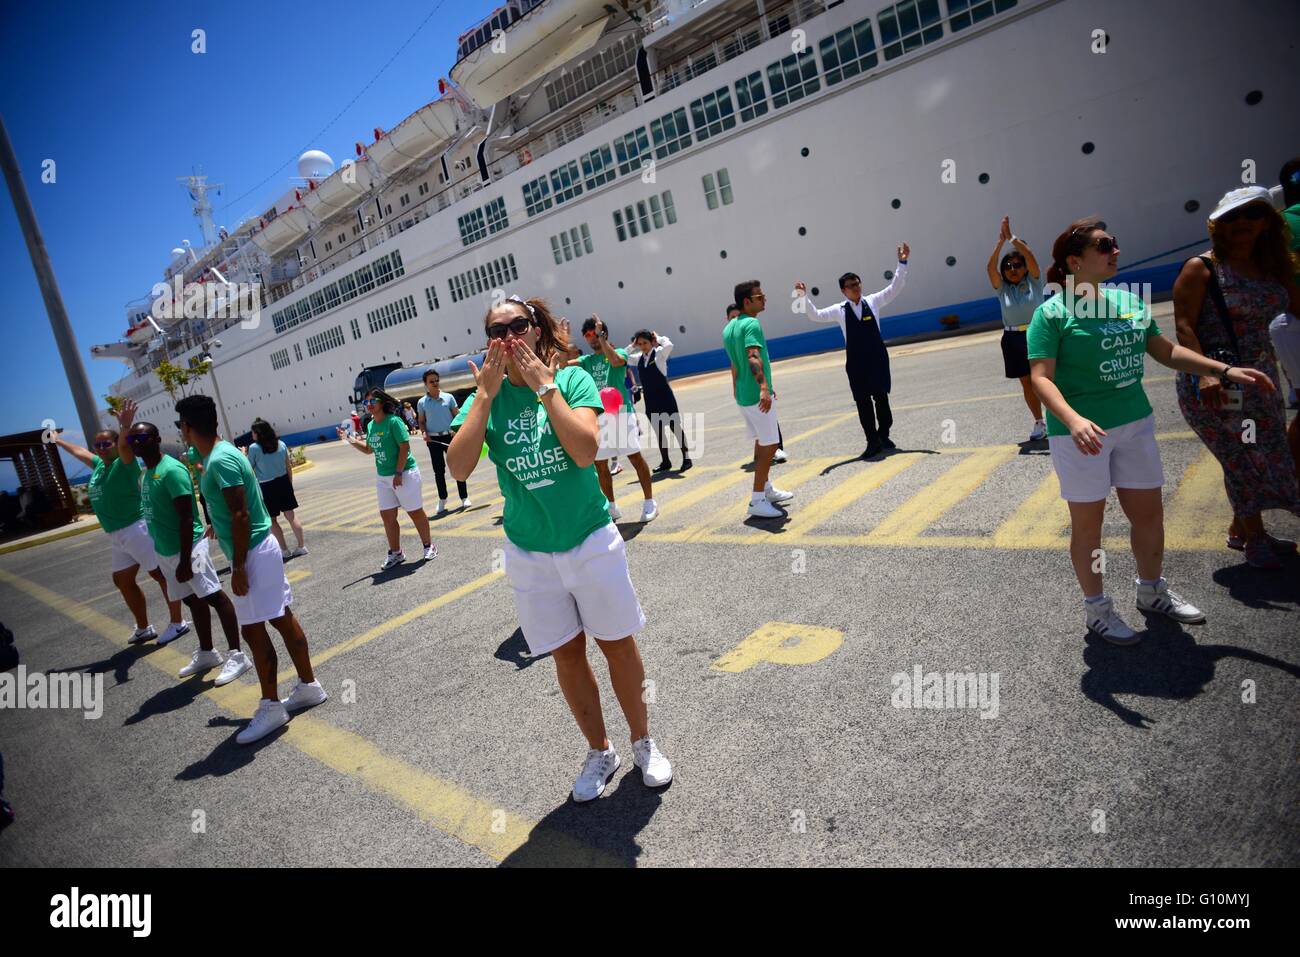 Costa cruise crew immagini e fotografie stock ad alta risoluzione - Alamy